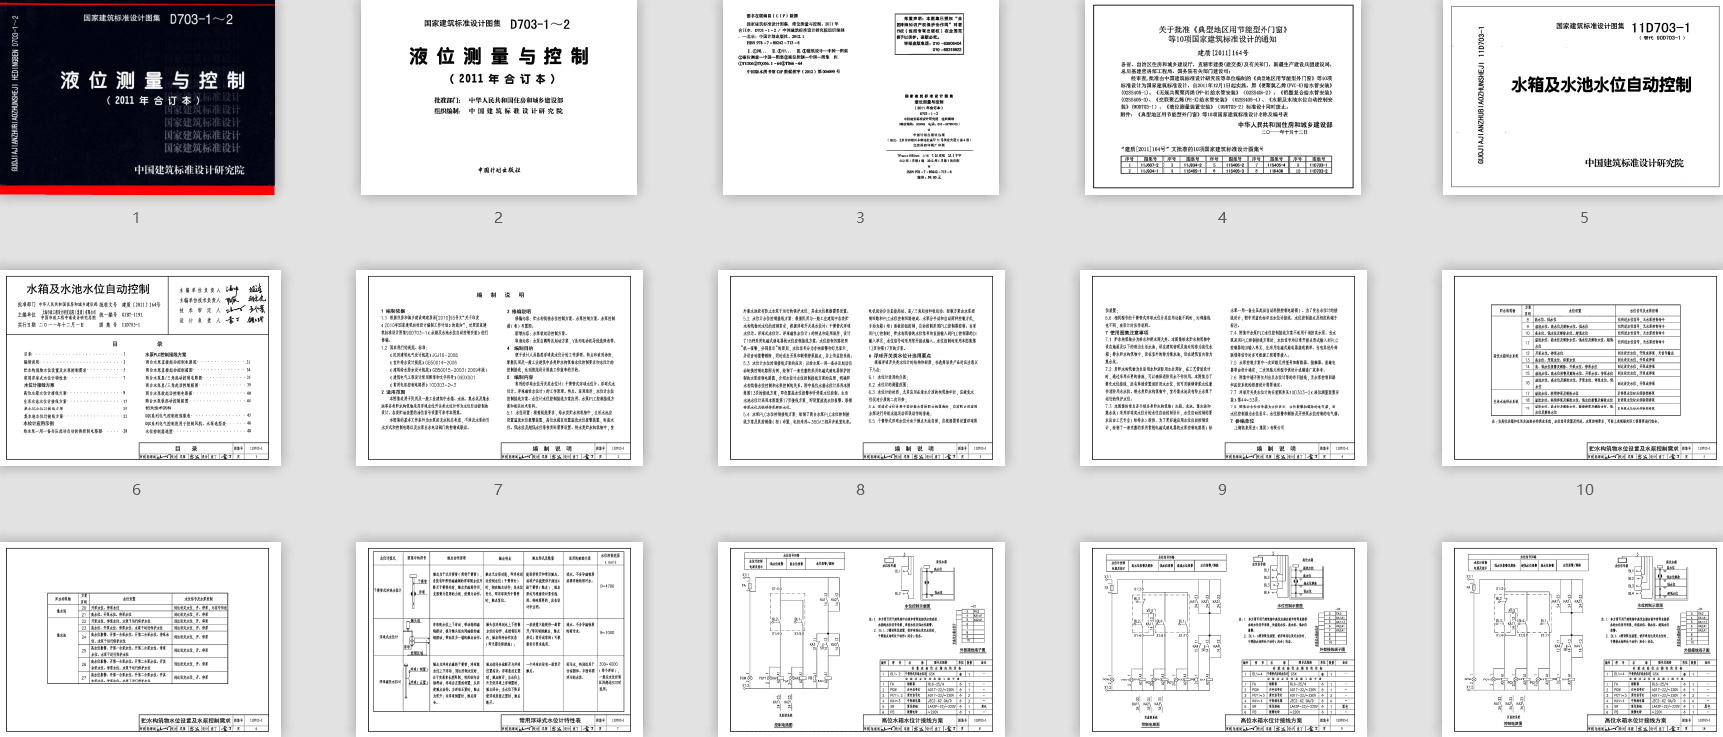 高清带书签 11D703-1～11D703-2液位测量与控制(2011年合订本、OC R完整版本).pdf